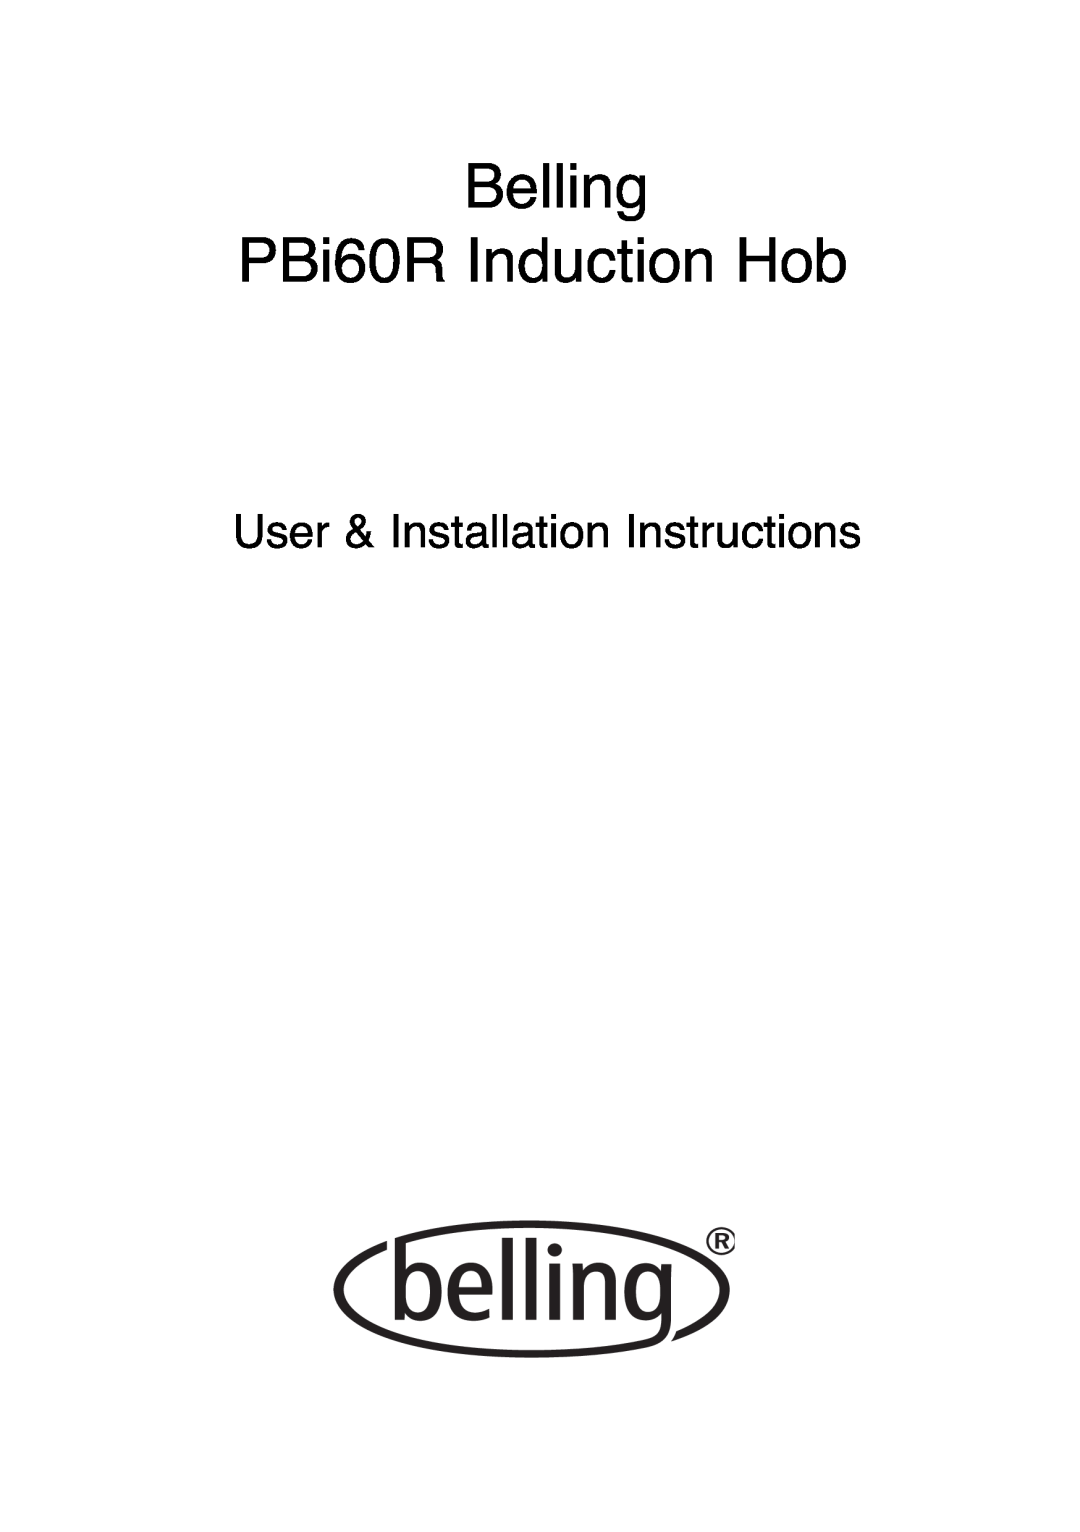 Glen Dimplex Home Appliances Ltd PBI60R installation instructions User & Installation Instructions 